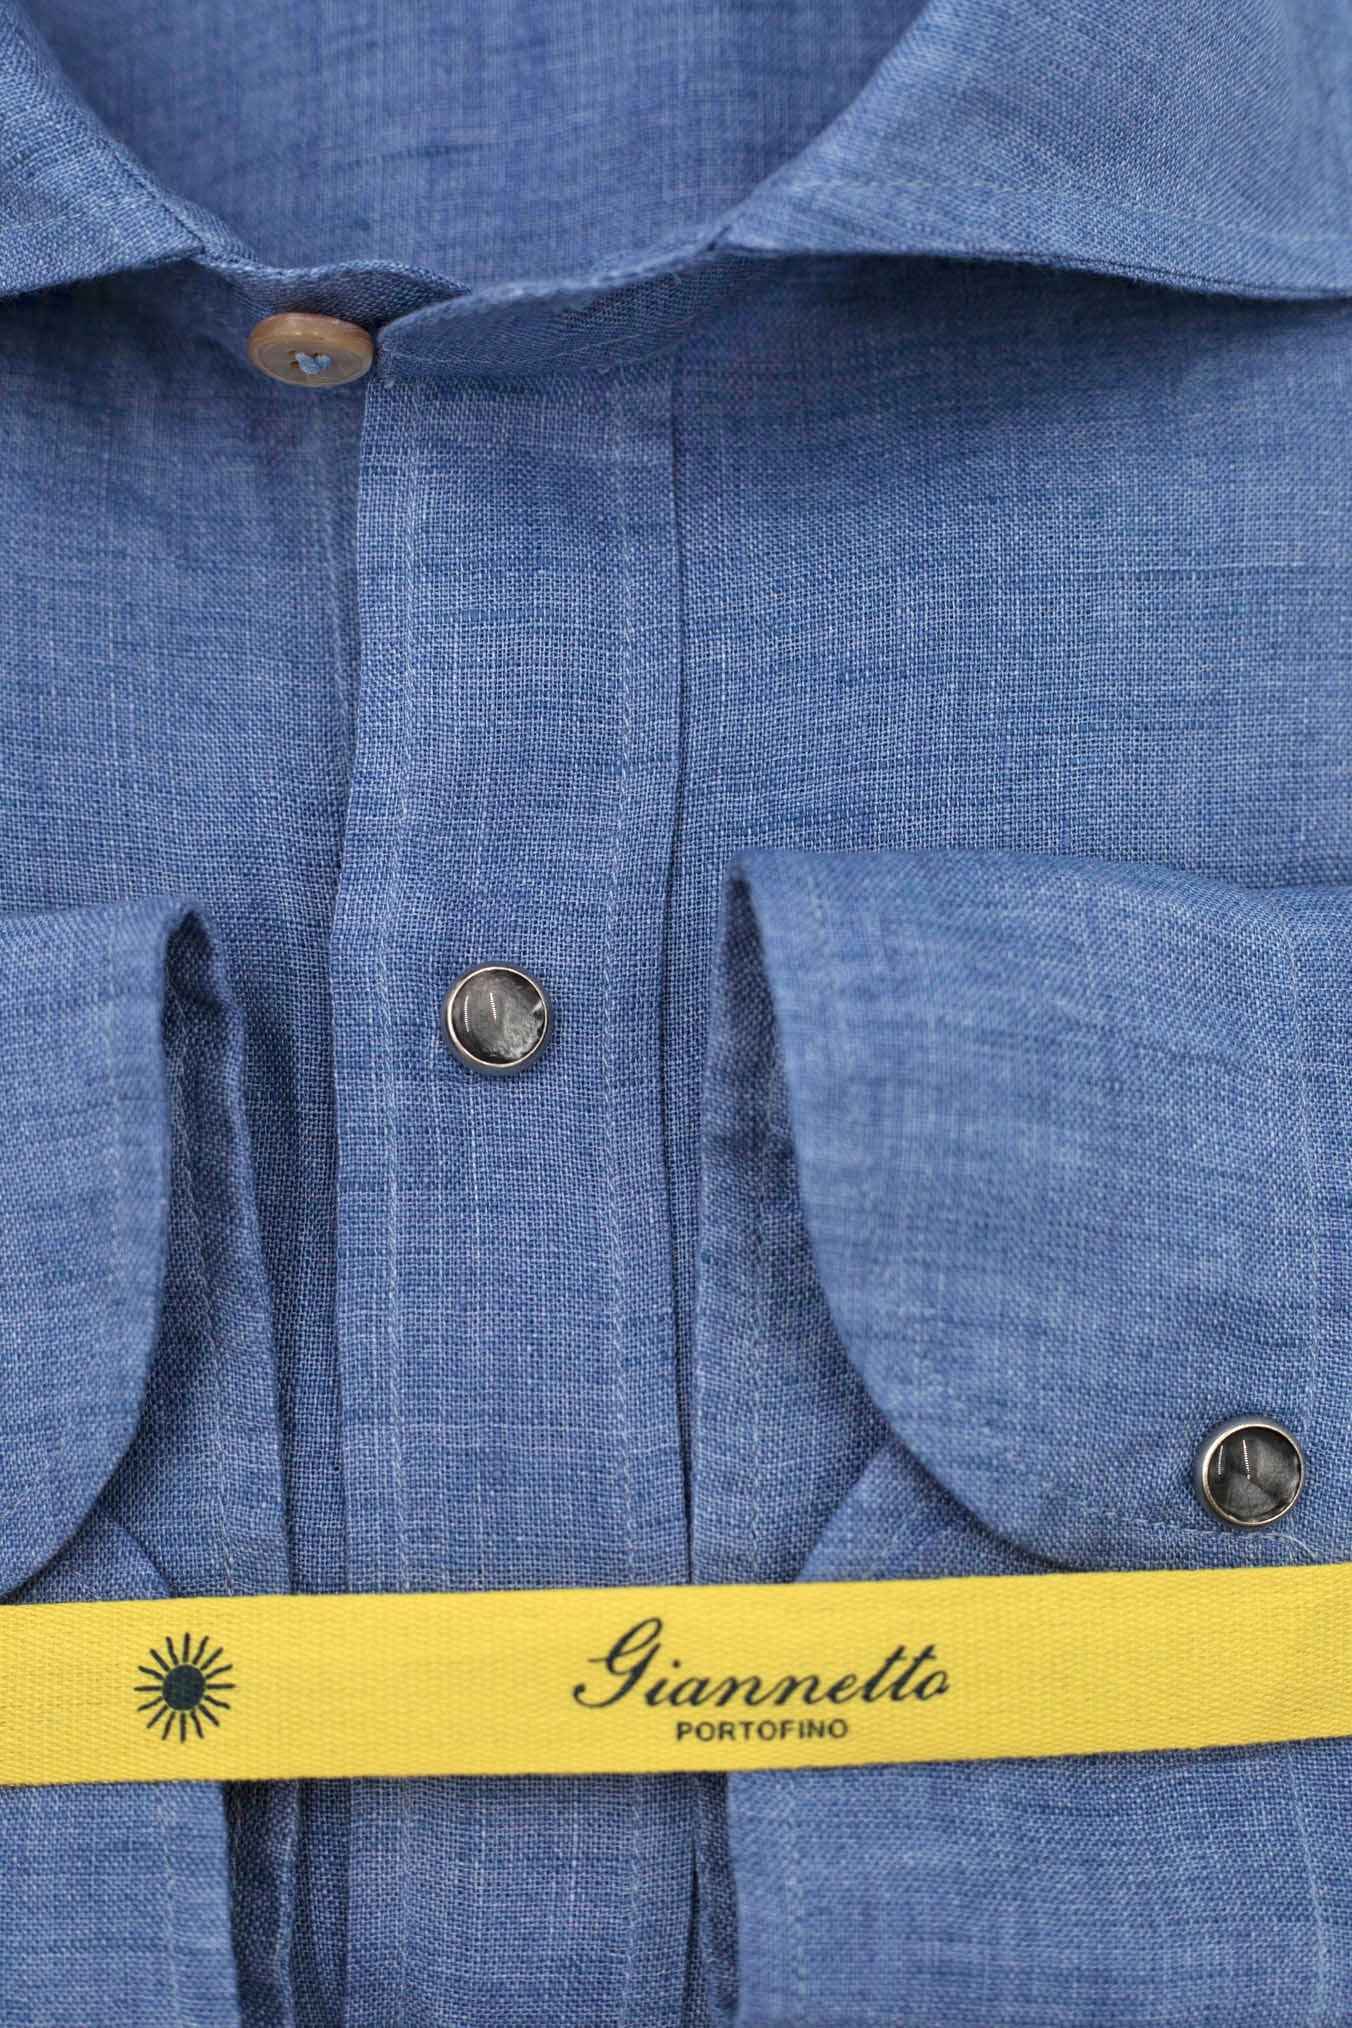 GIANNETTO PORTOFINO Light Blue Linen Shirt COMFORT FIT